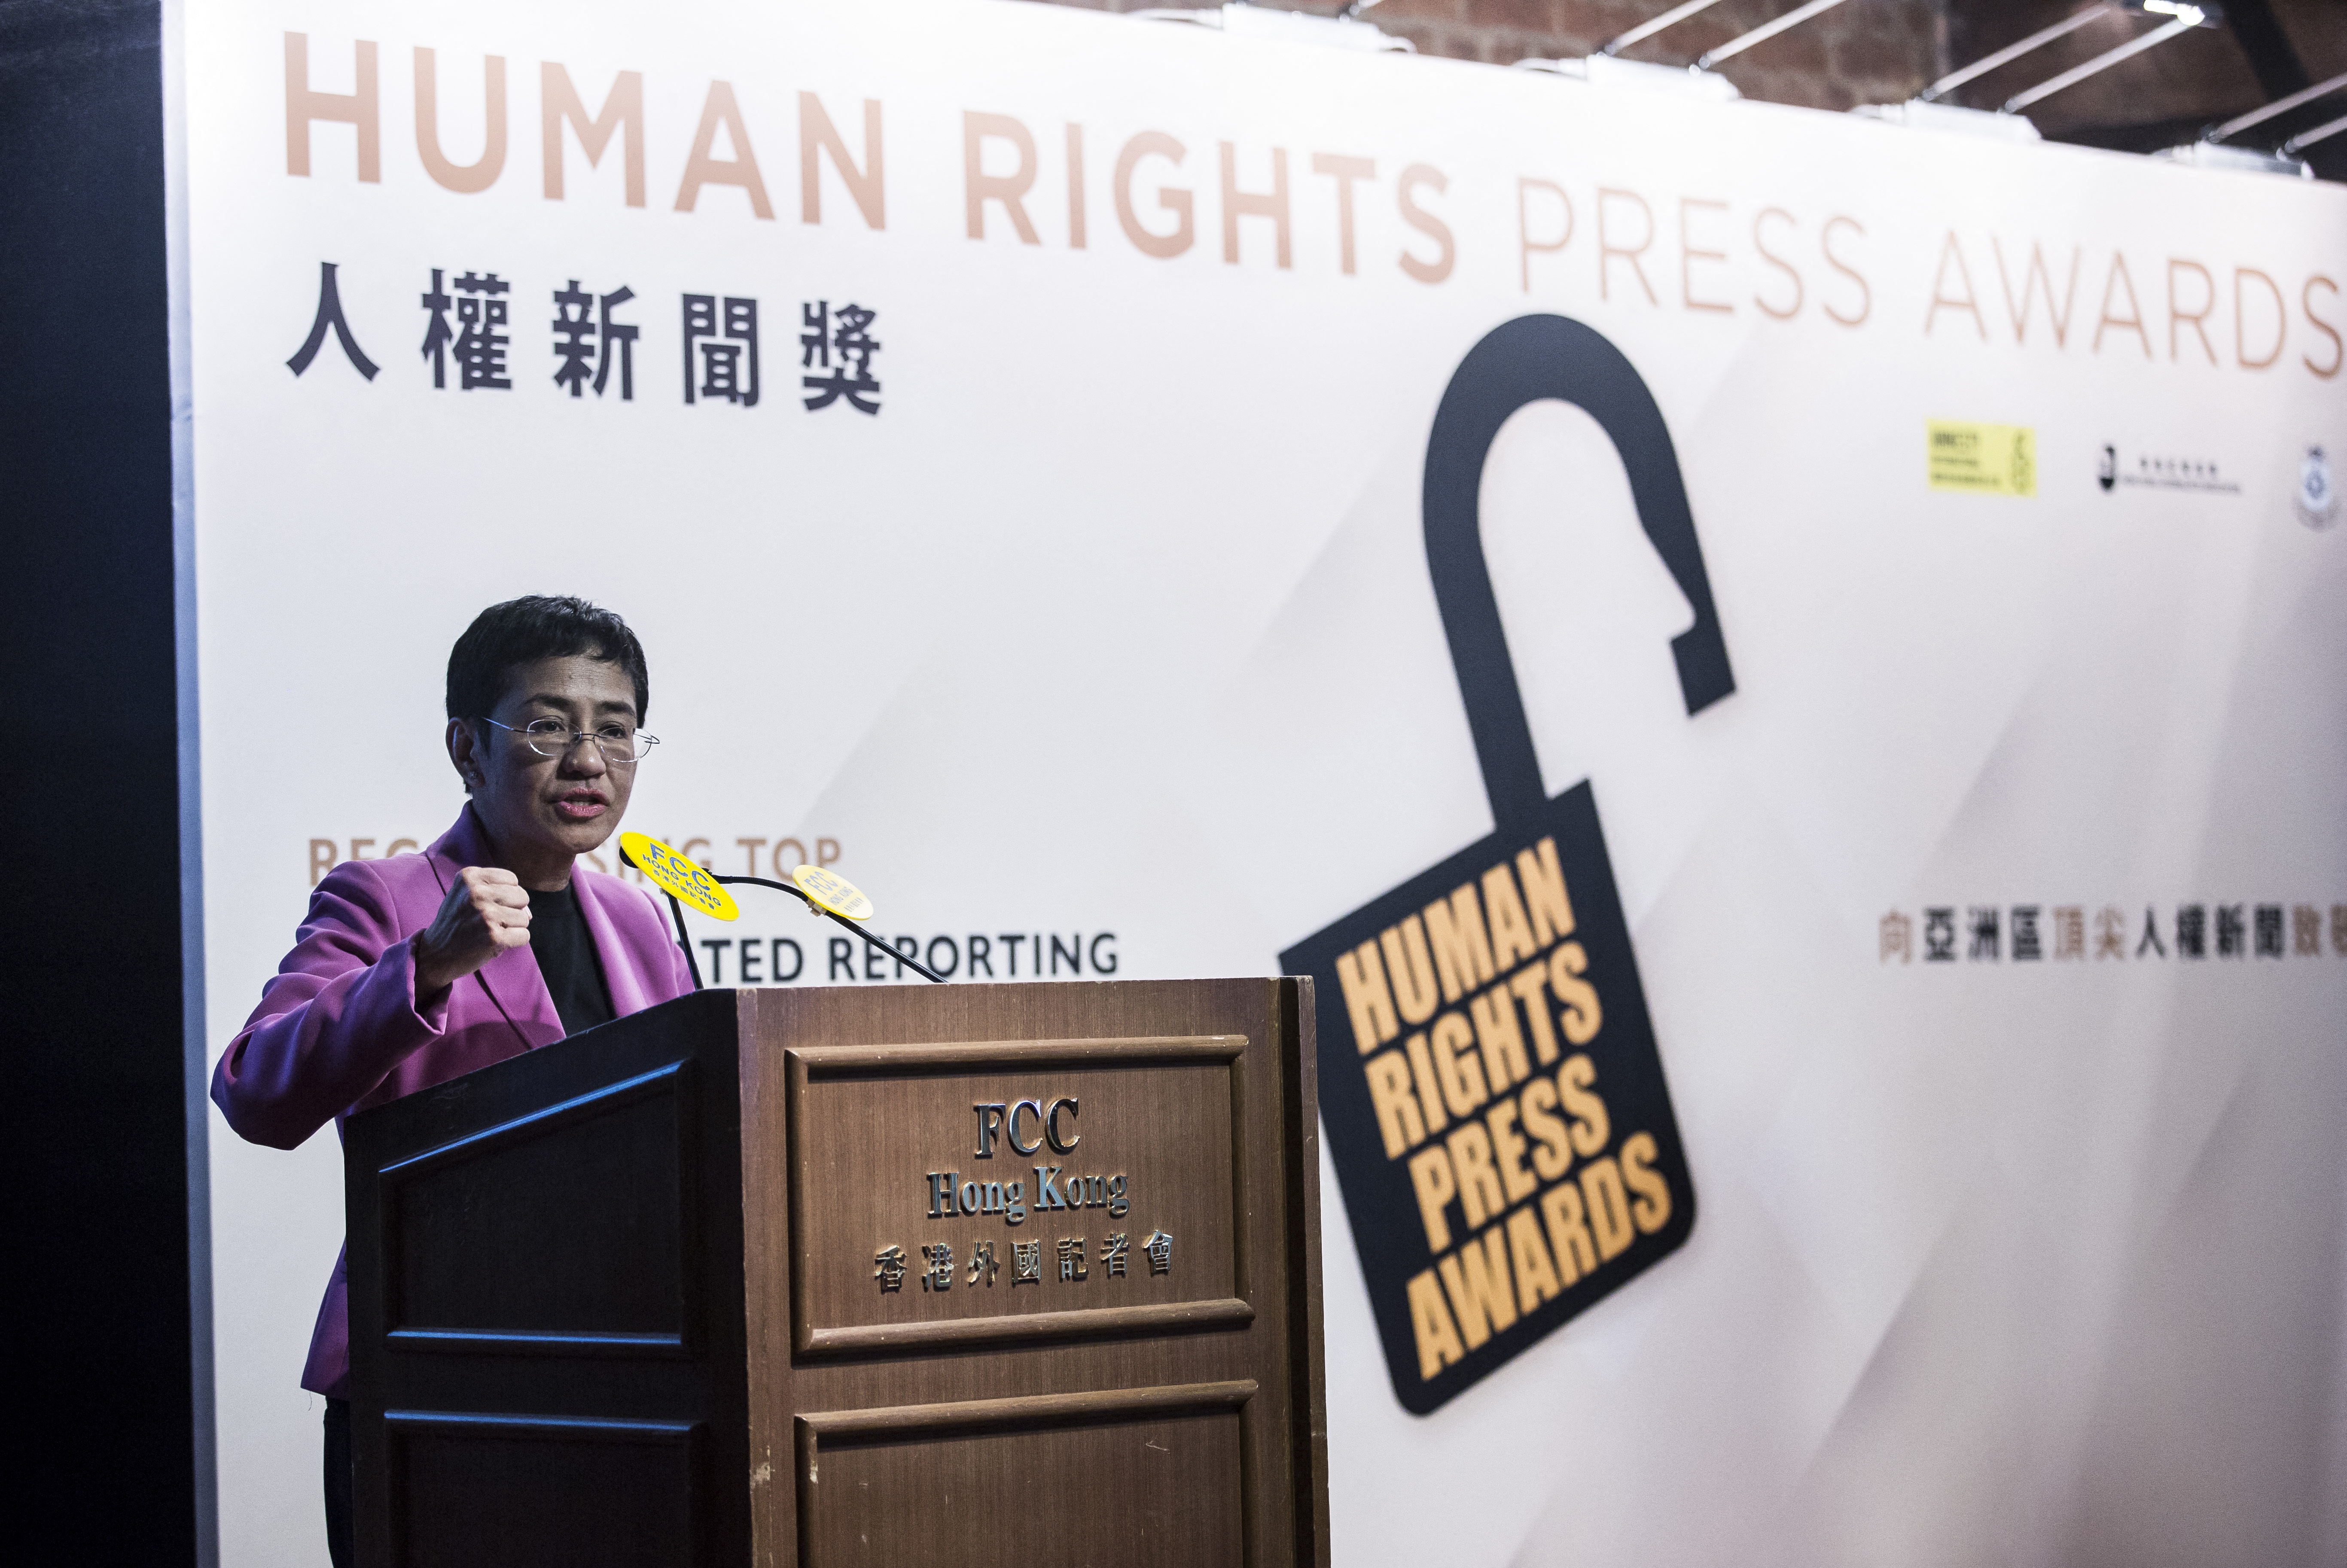 Hongkongban nem adják át az emberi jogi sajtódíjat, nehogy törvényt sértsenek vele